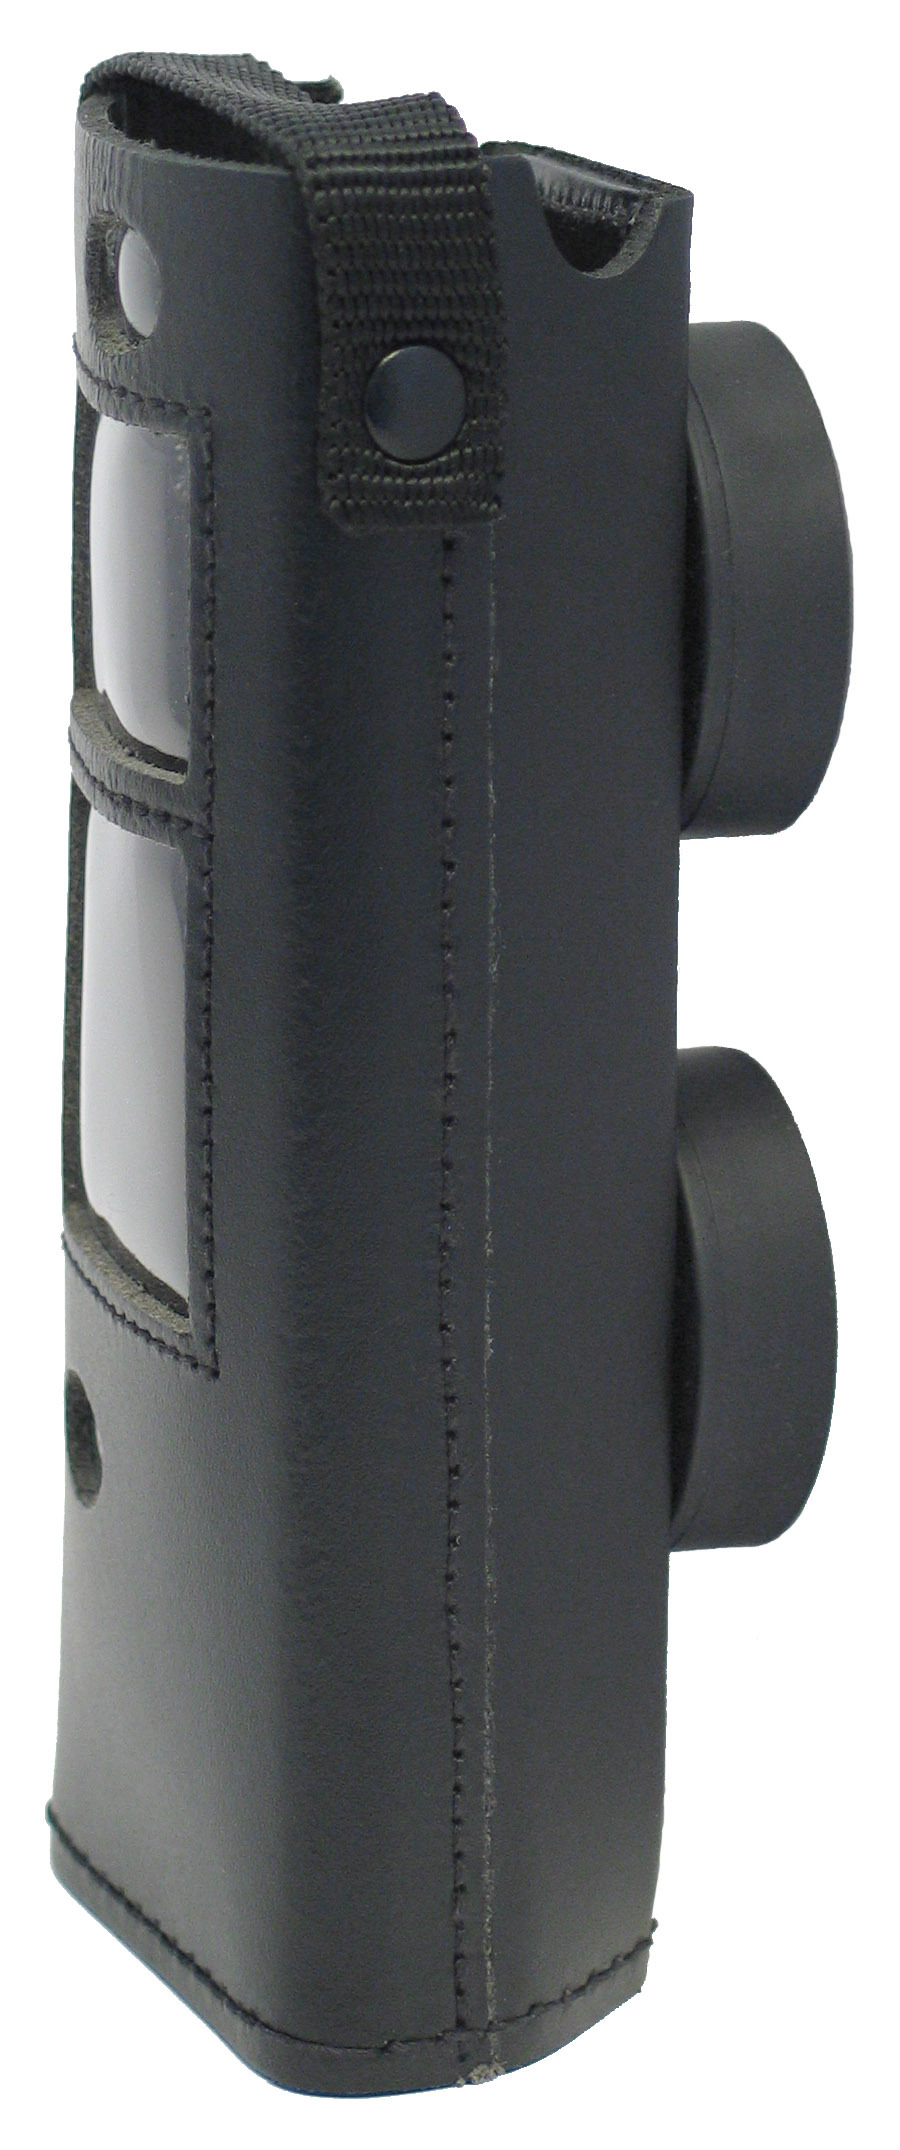 Schutztasche Handmessgeräte HMG2 mit Magnet